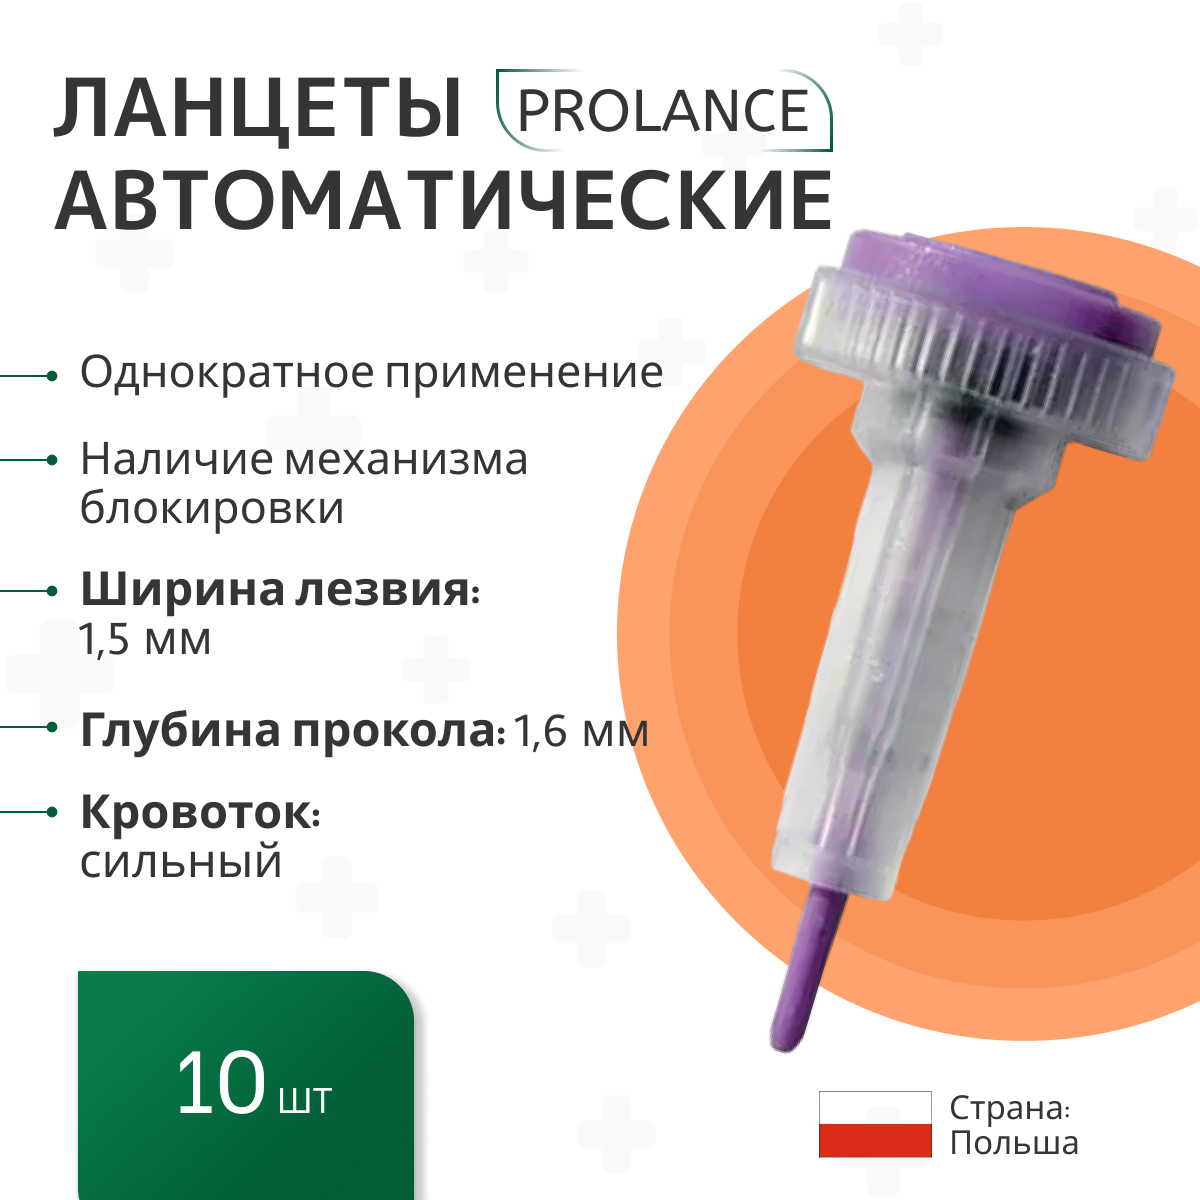 Ланцеты Prolance Max Flow для капиллярного забора крови 10 шт., глубина прокола 1,6 мм, фиолетовые